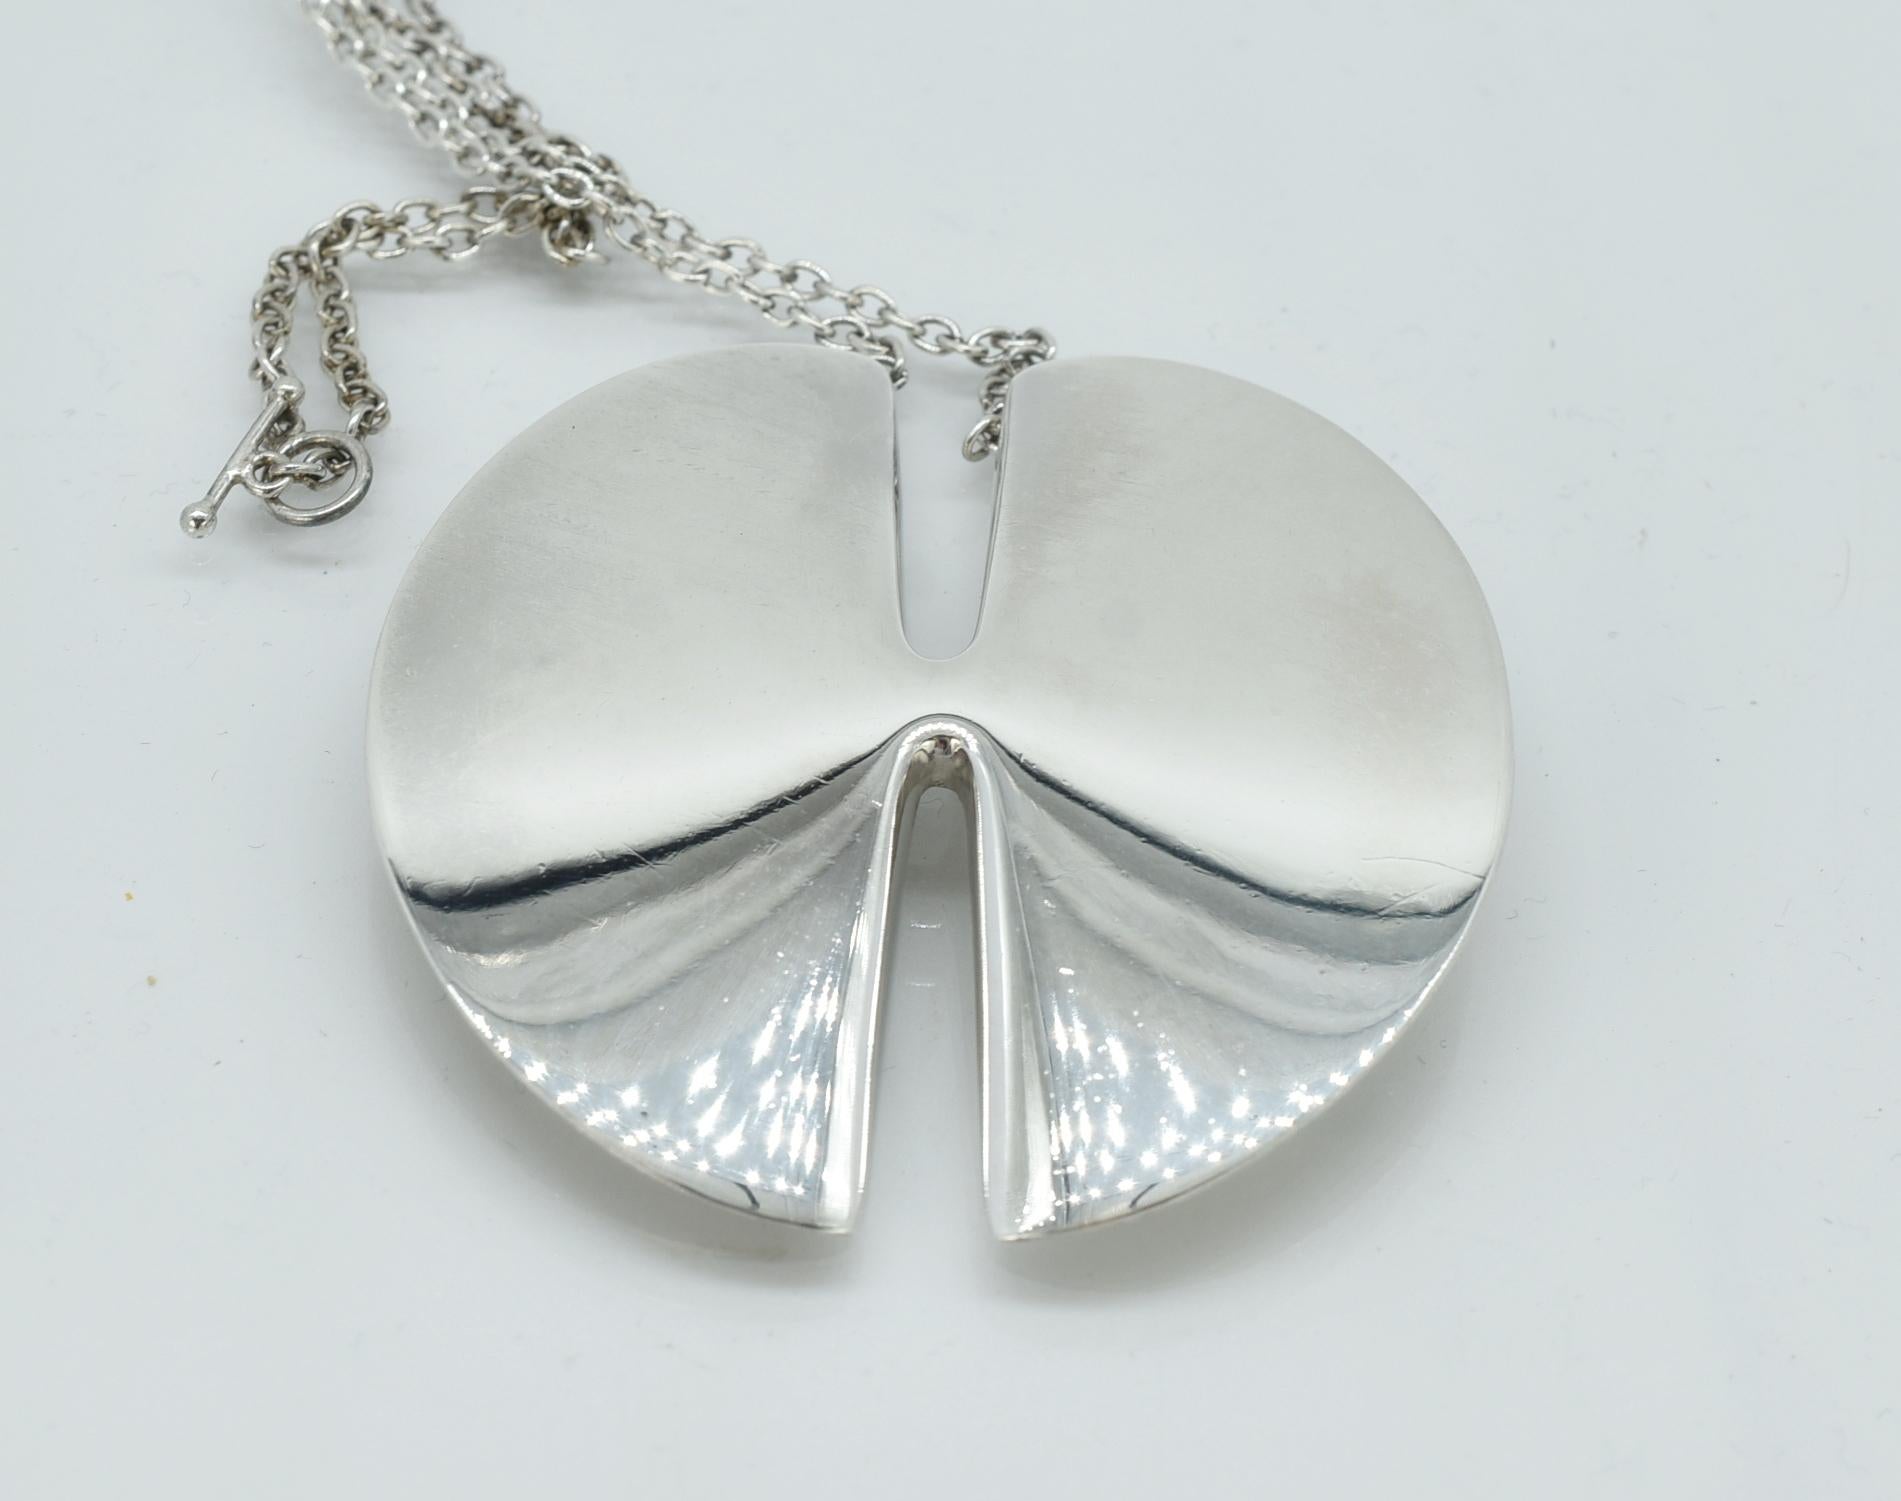 Georg Jensen modern designed disk pendant necklace. Sterling Silver, # 337A designed by Nanna Ditzel. 2 3/8